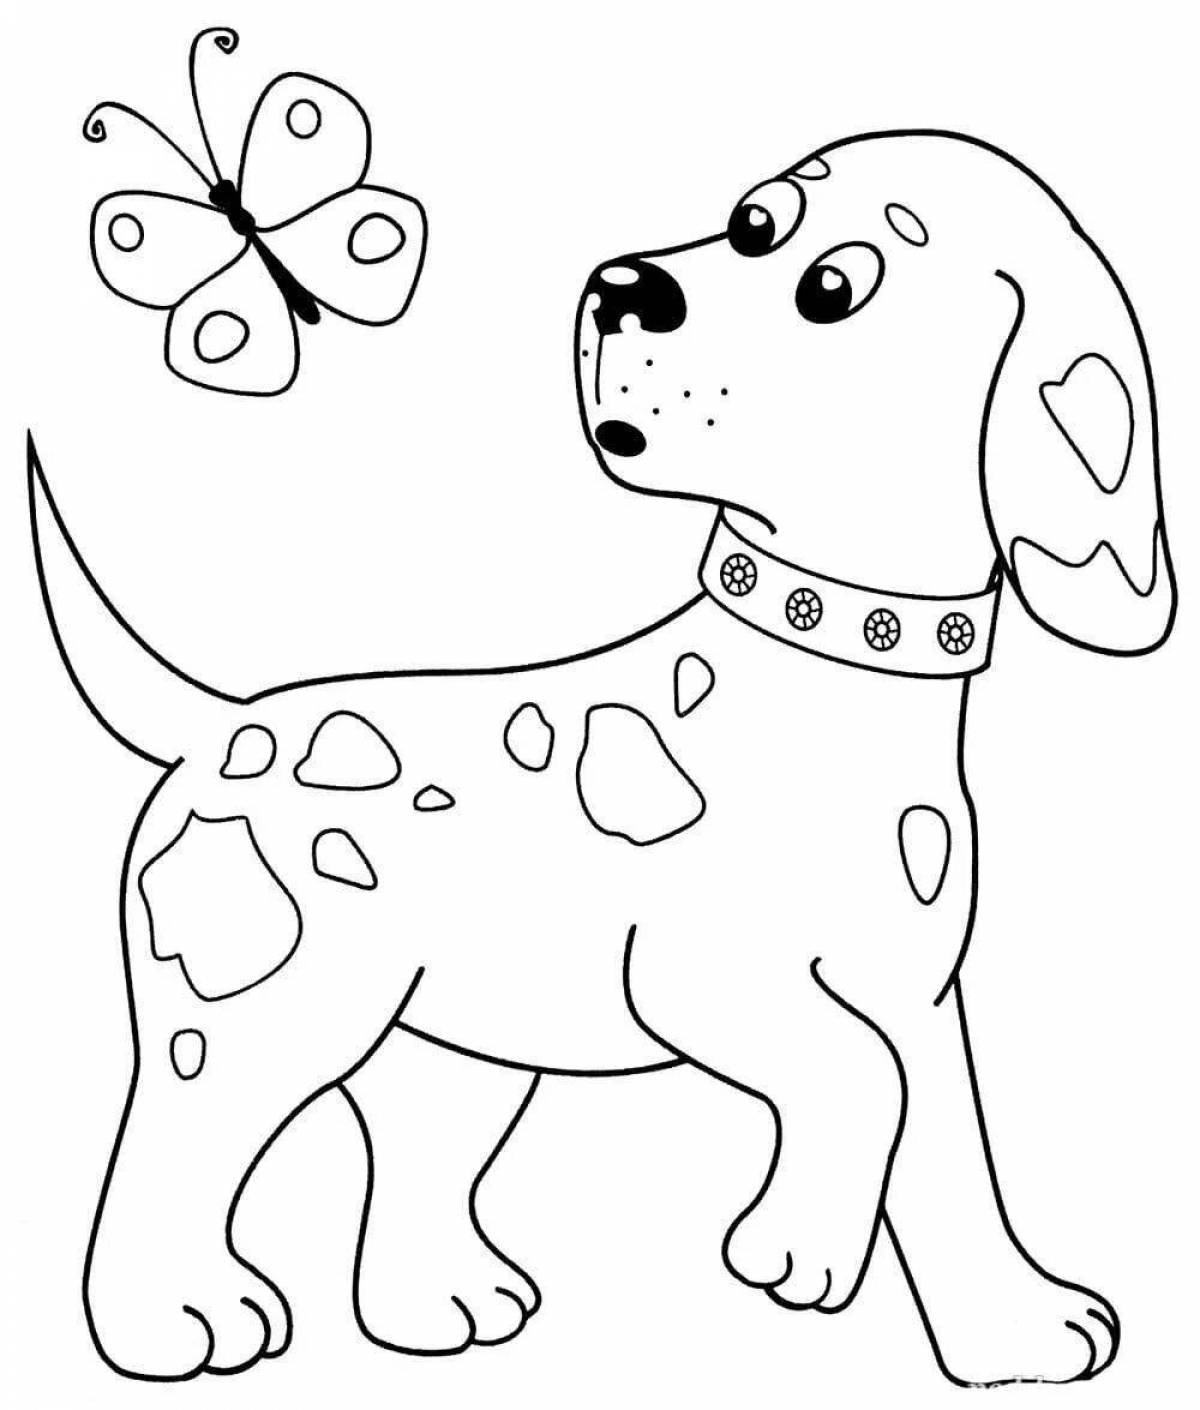 Раскраска Собачка для малышей распечатать или скачать